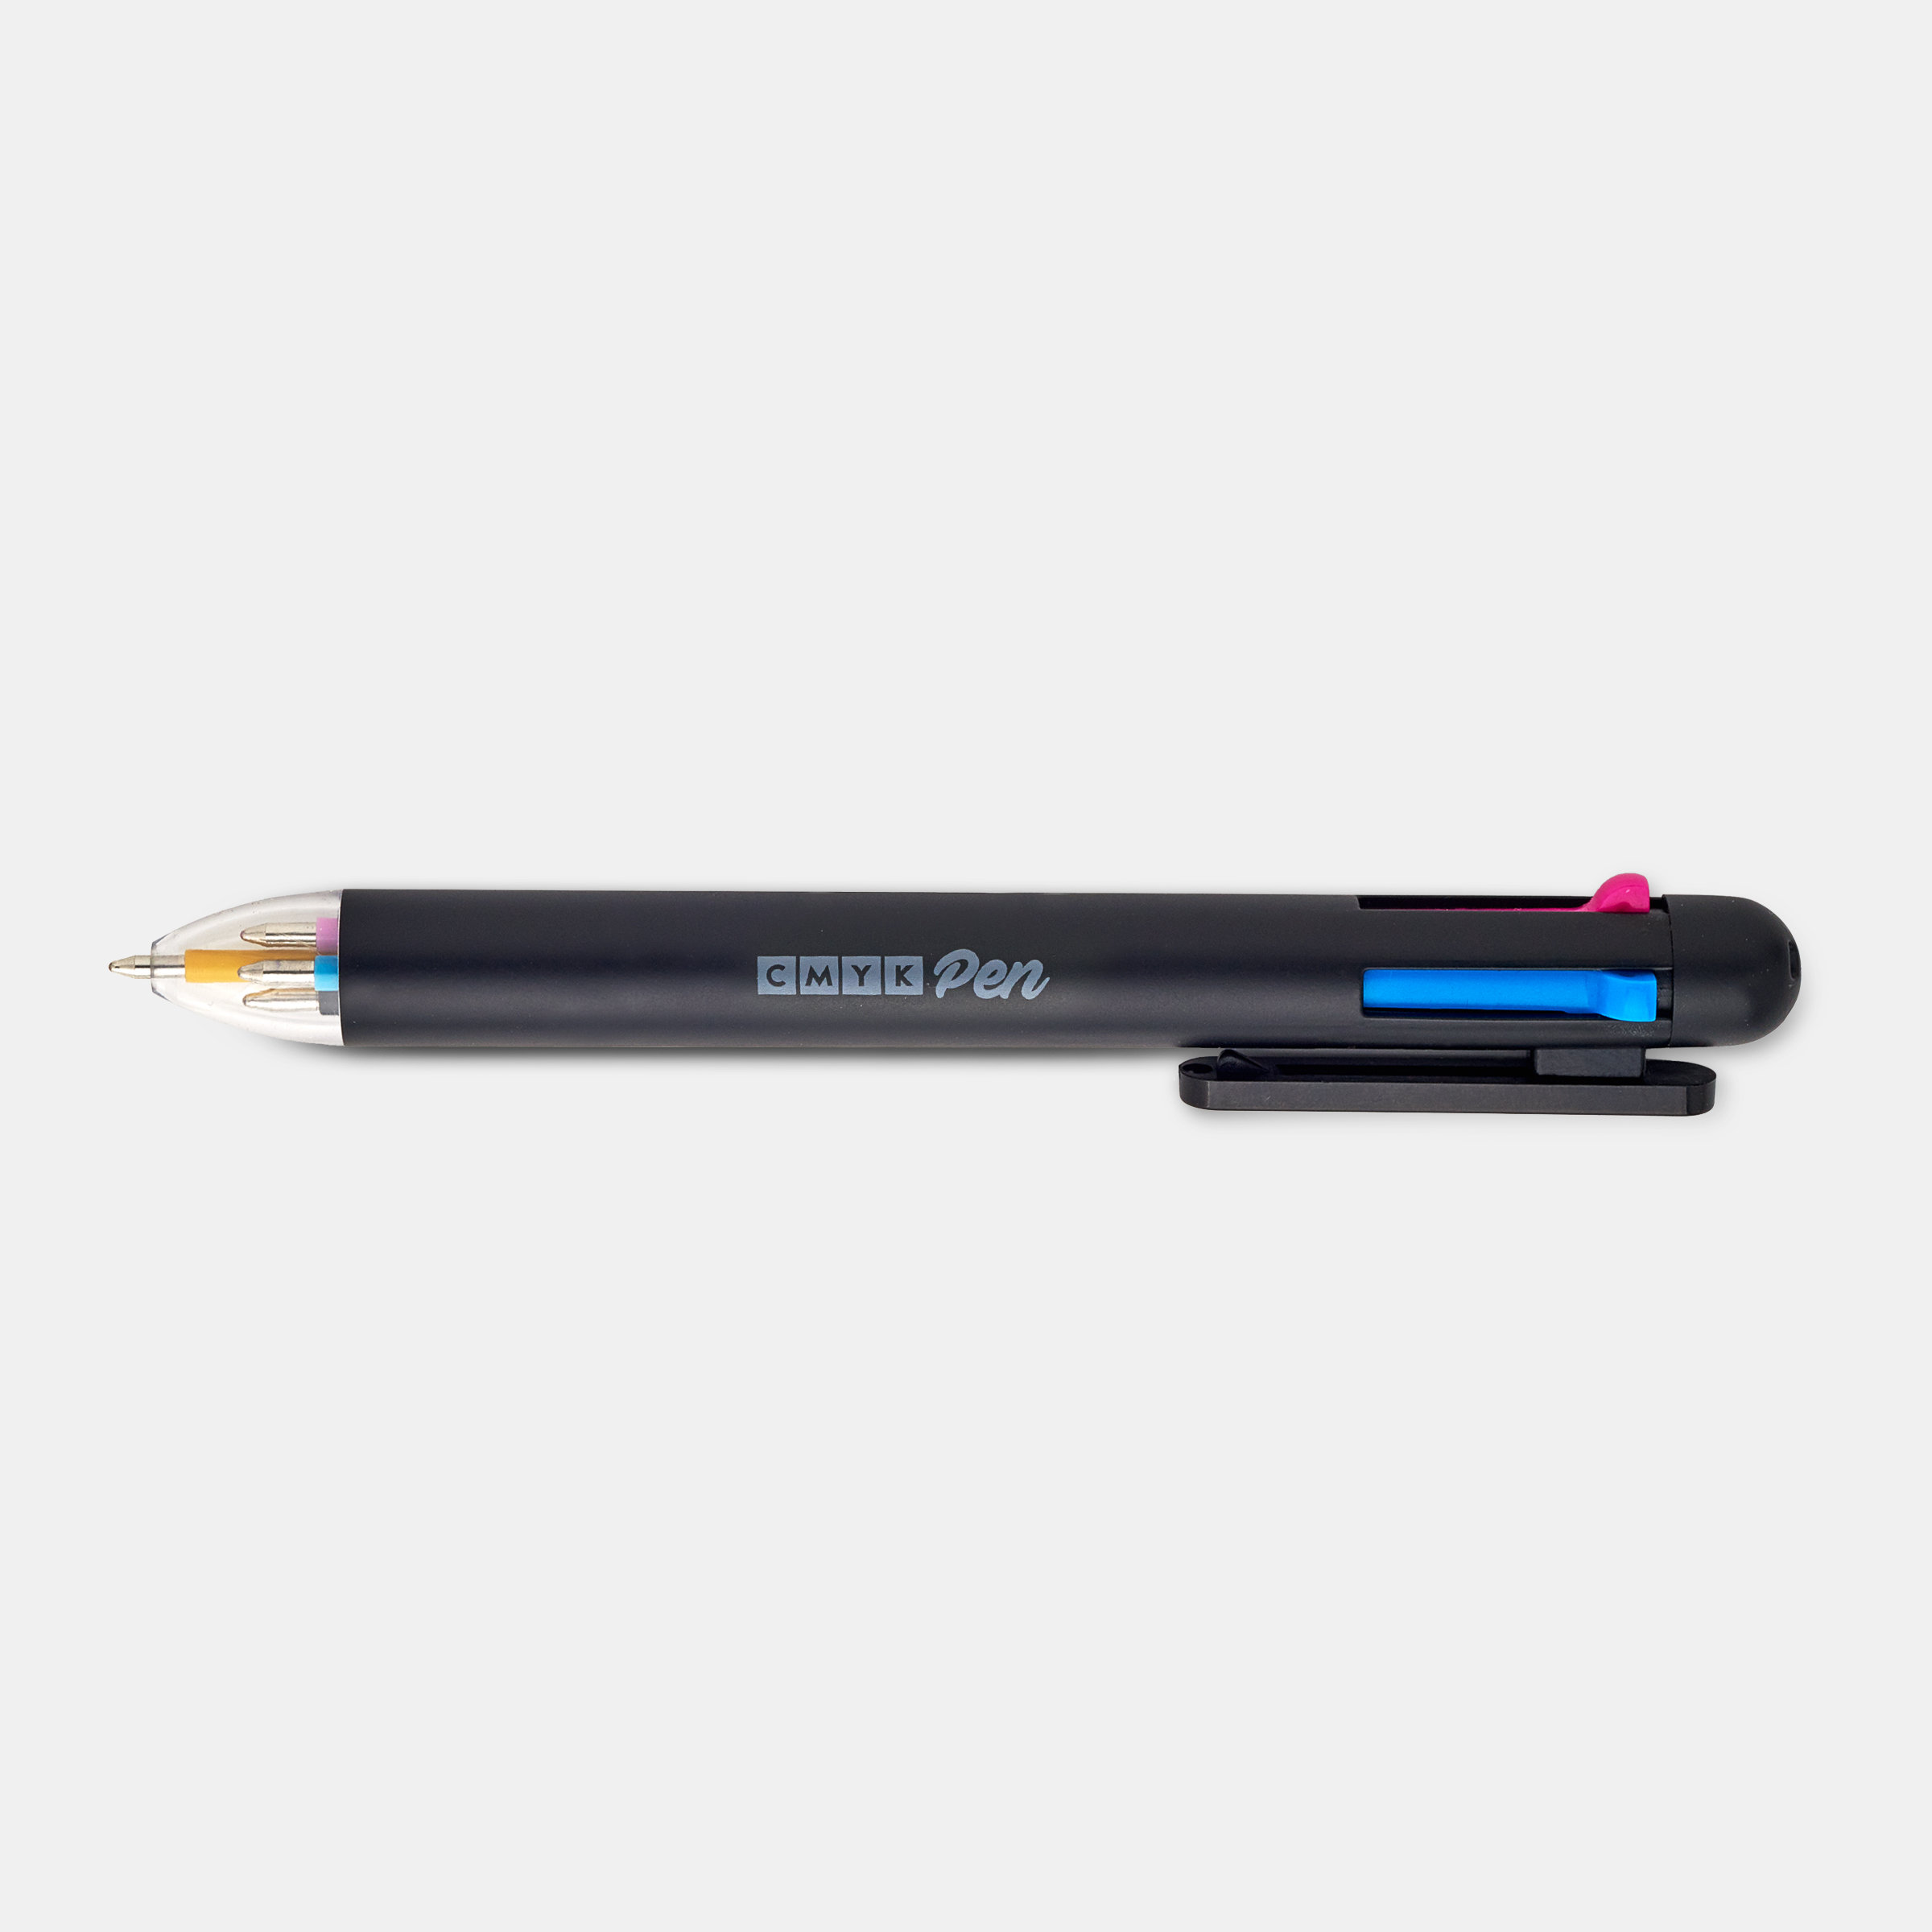 CMYK 4 Colour Pen